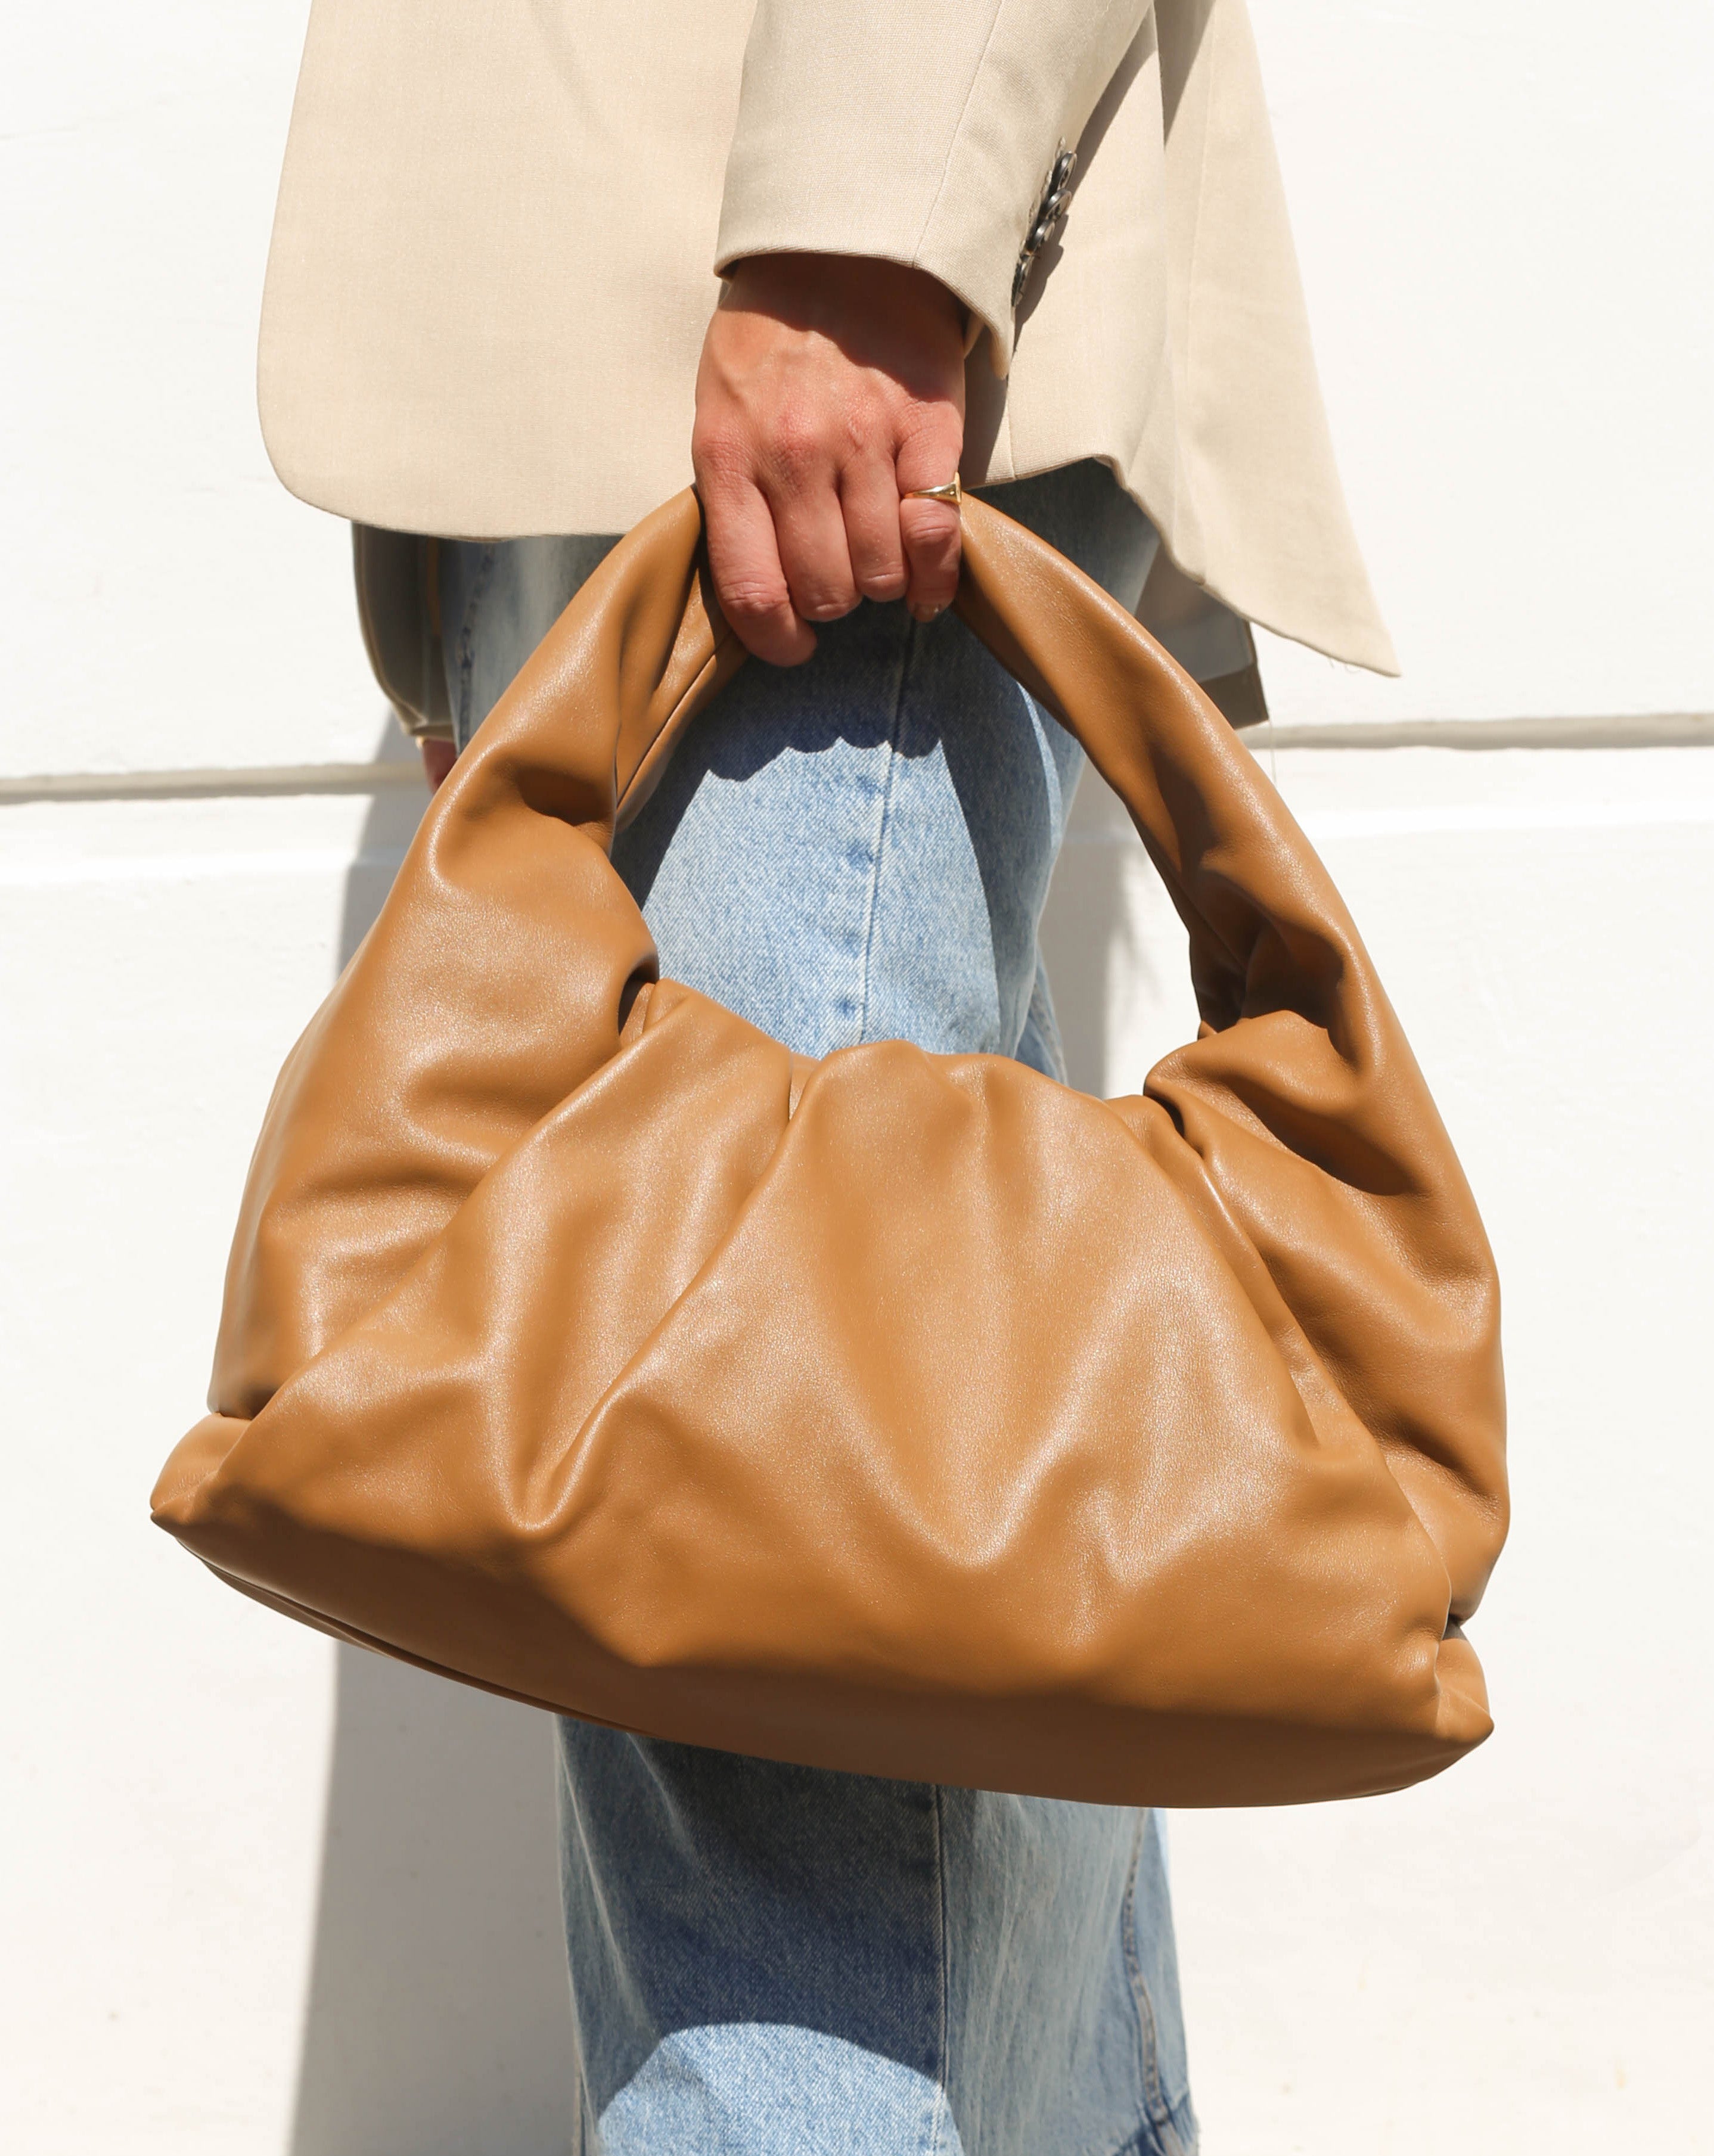 BOTTEGA VENETA Medium Shoulder Pouch Leather Bag in Moutarde [ReSale]